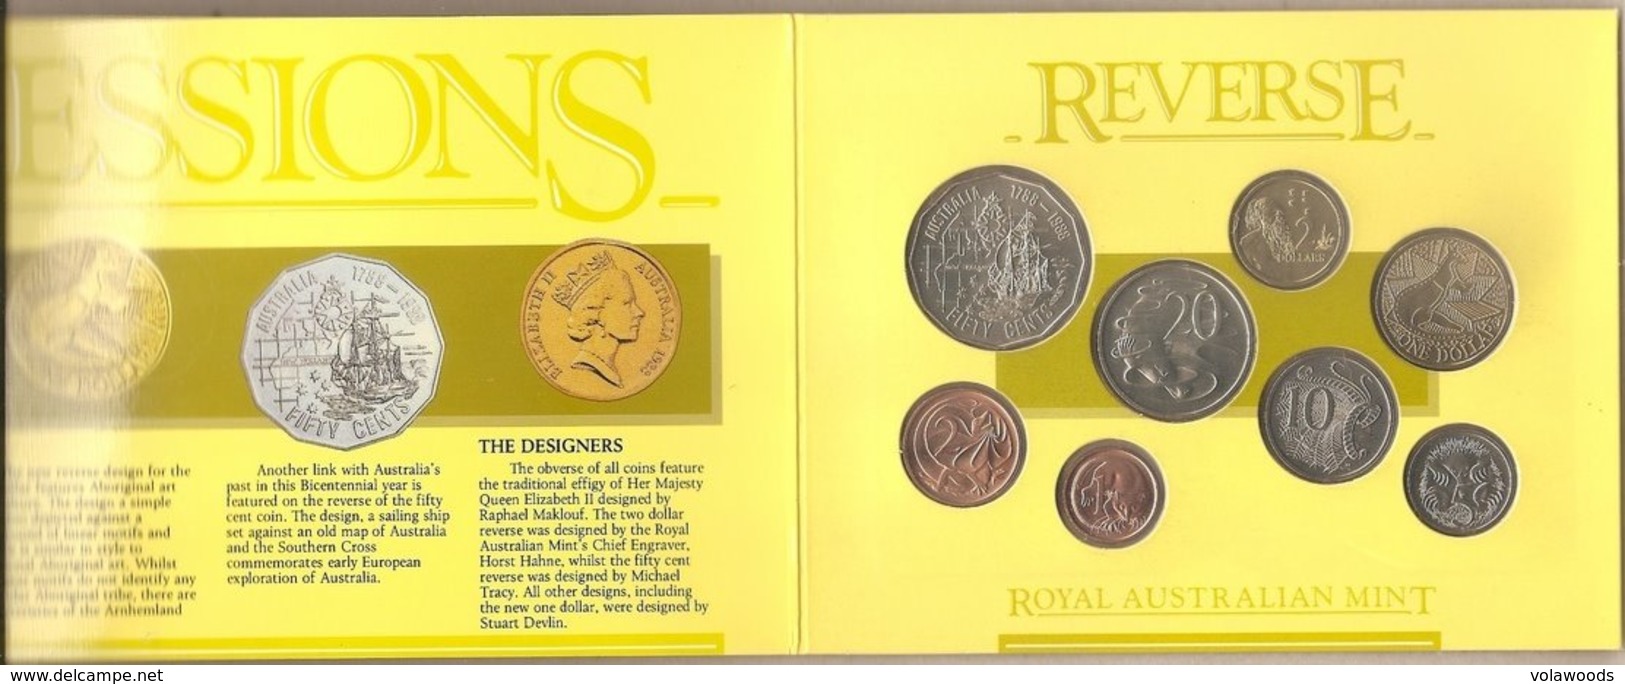 Australia - Mint Set (FDC) - 1988 - Münz- Und Jahressets